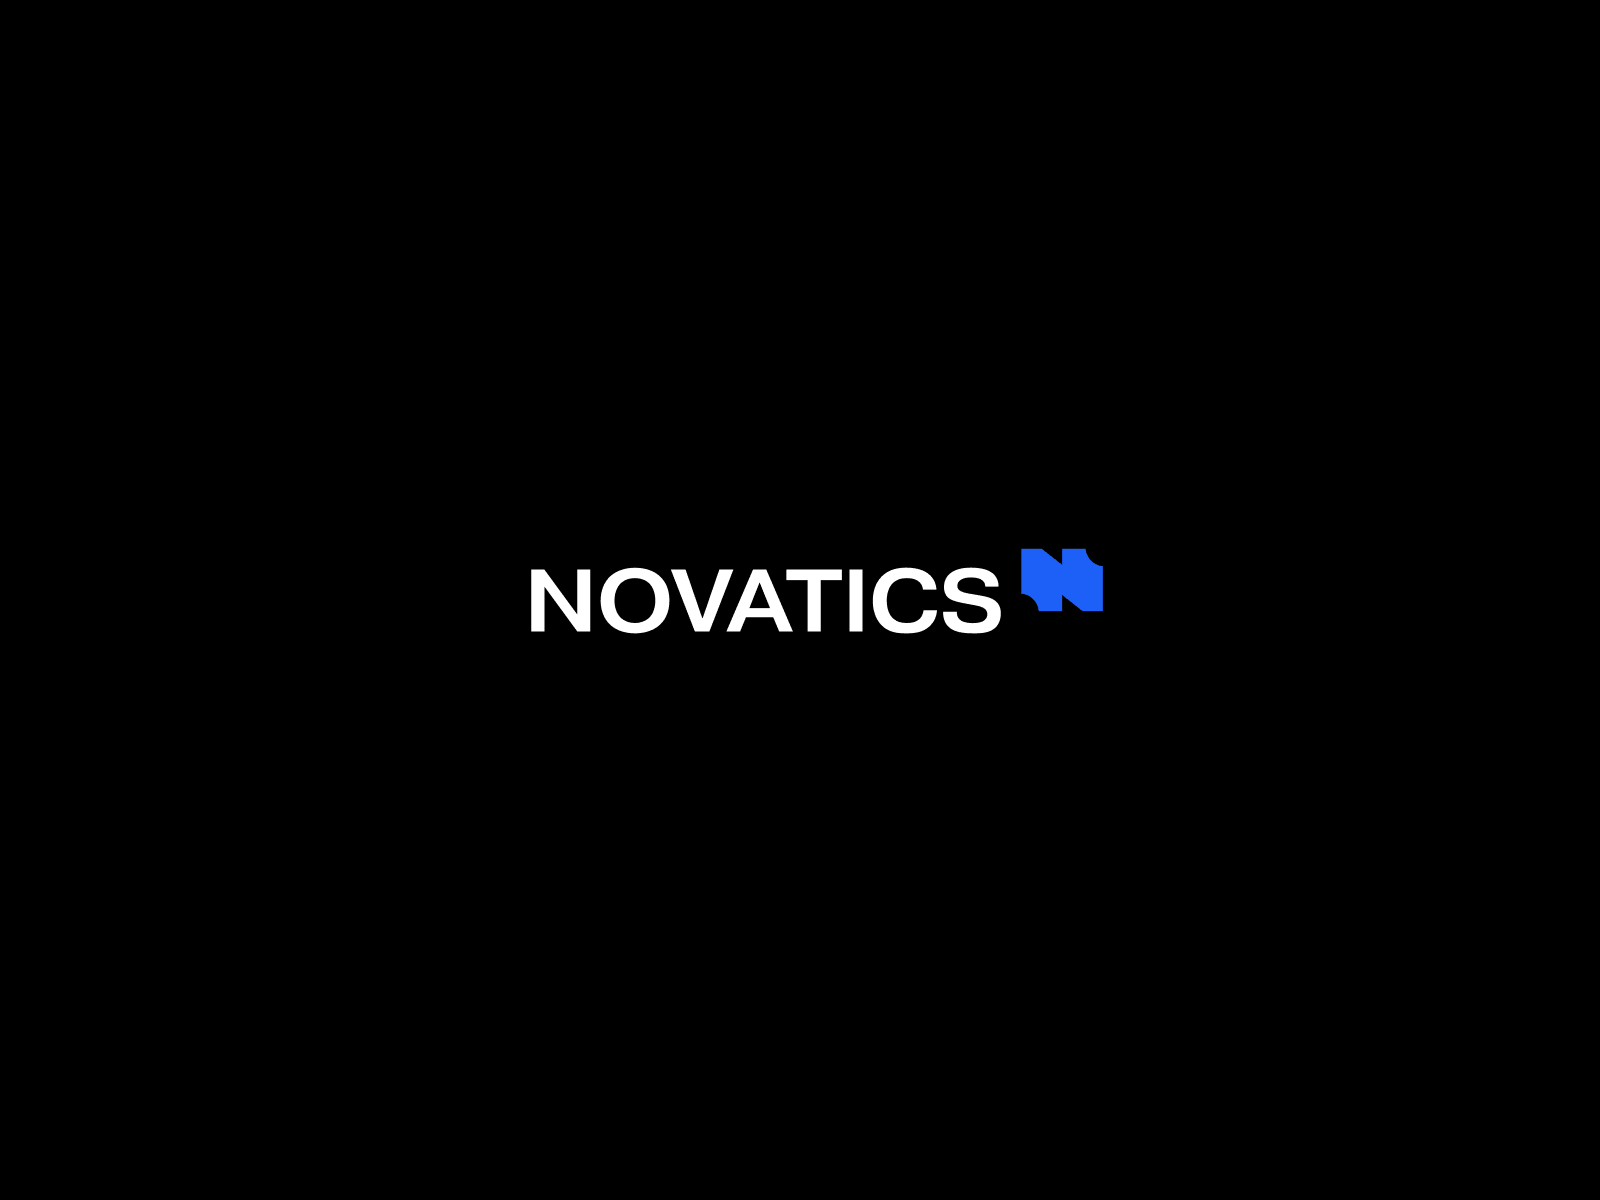 Brand concepts for Novatics